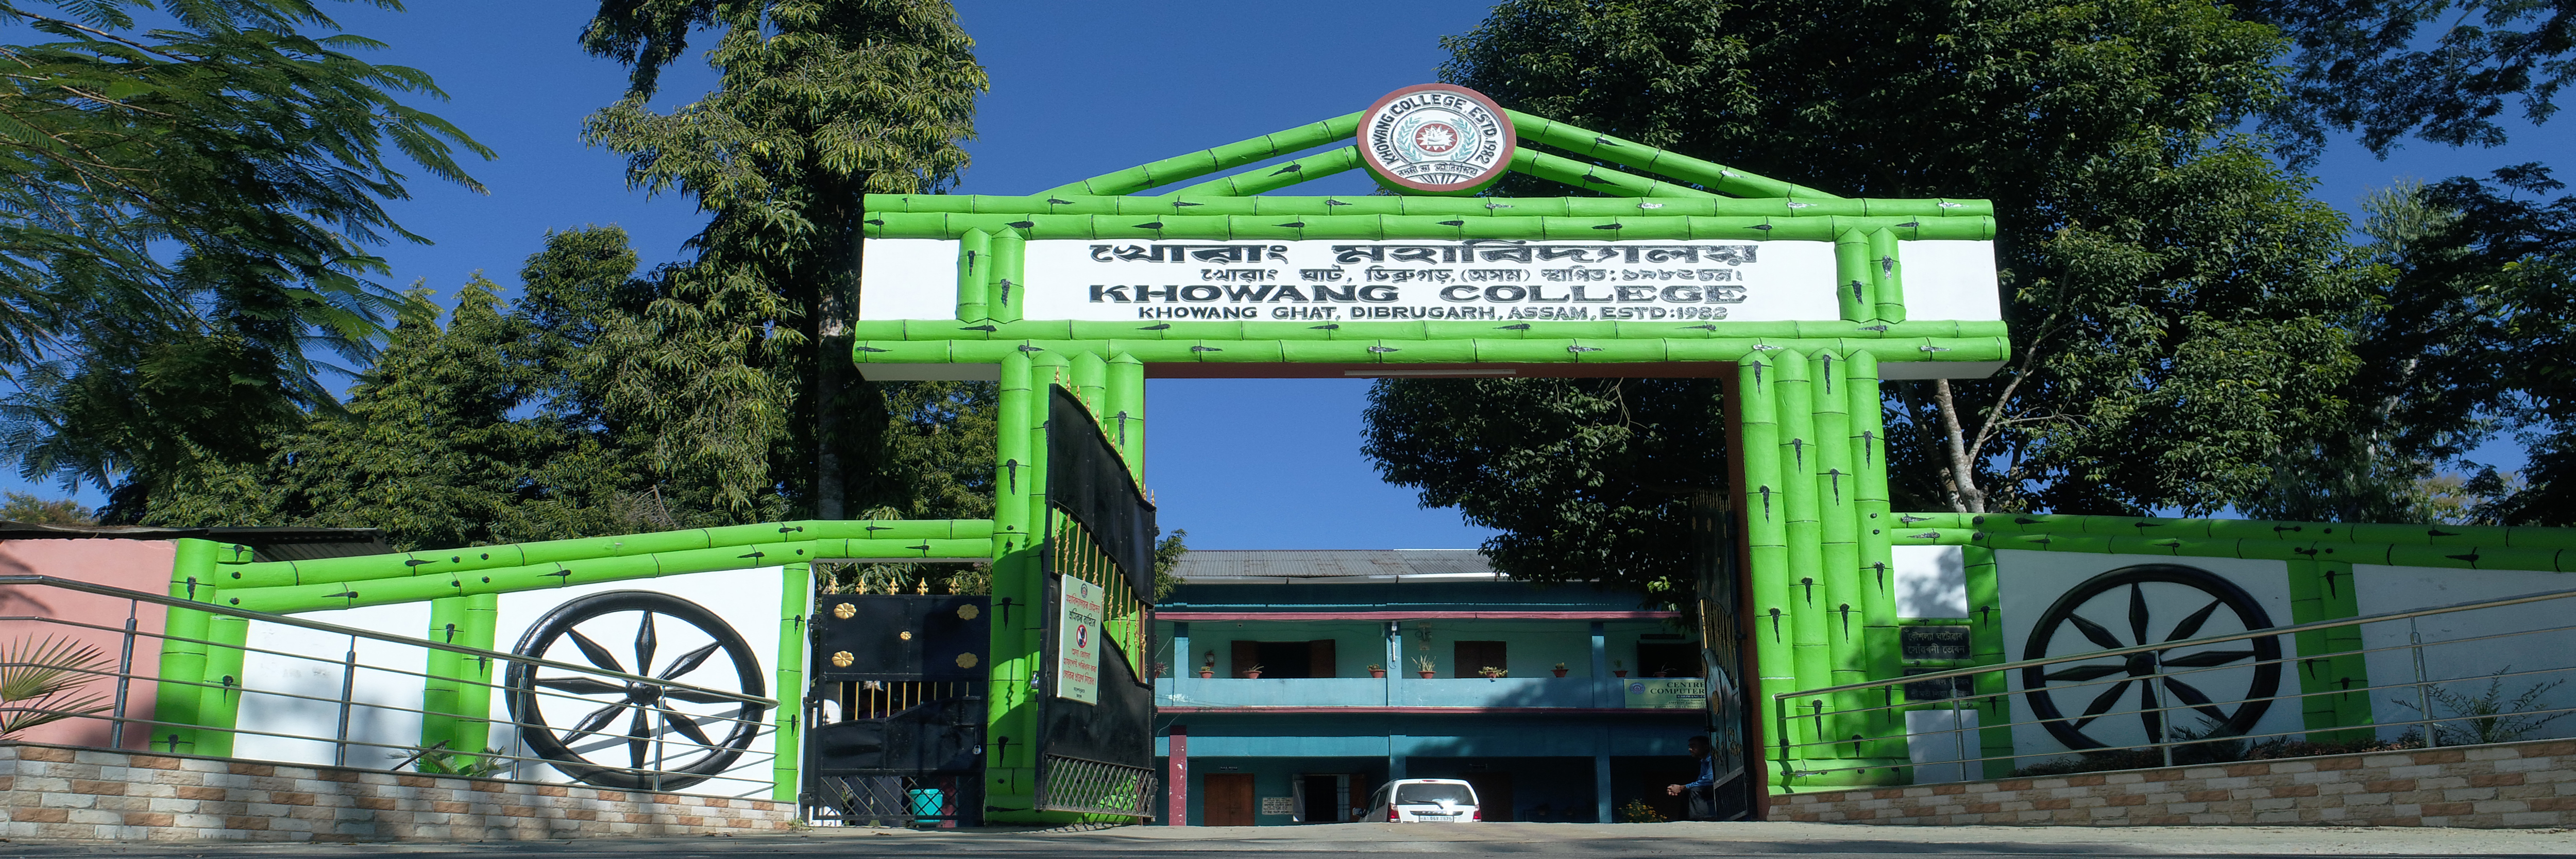 khowangcollege